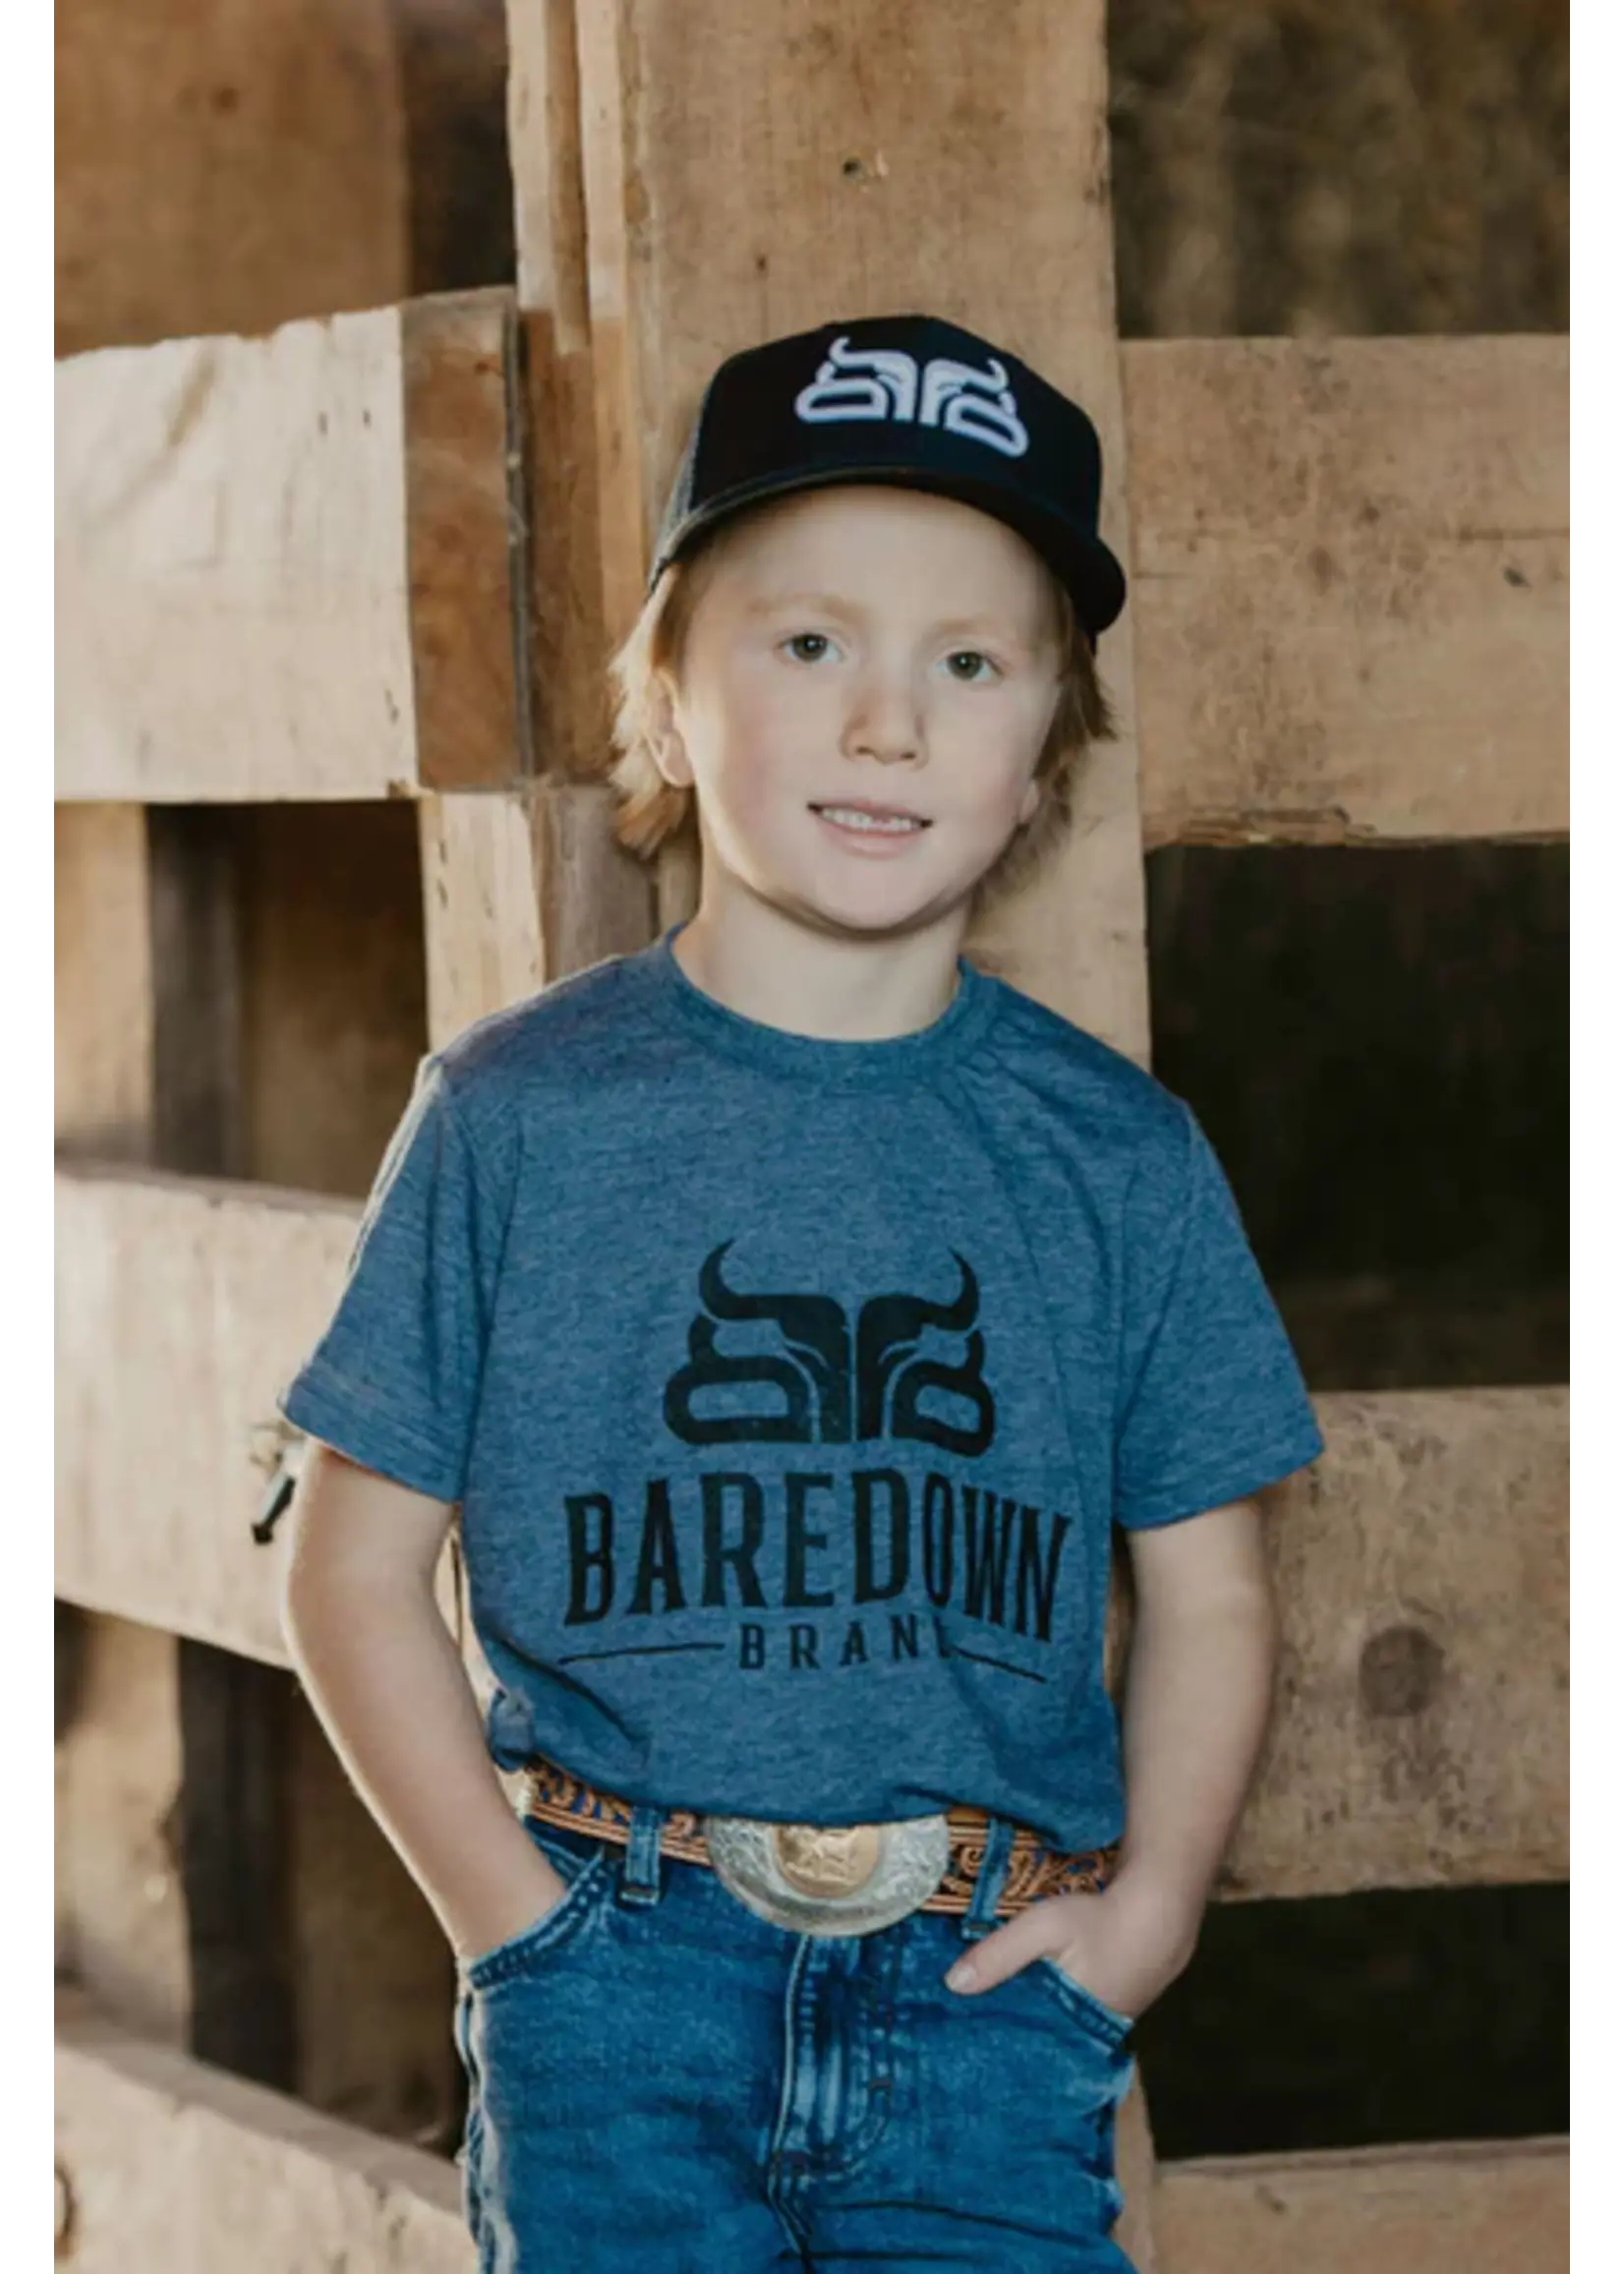 Baredown Brand Baredown - Youth T-Shirt - Heather Navy